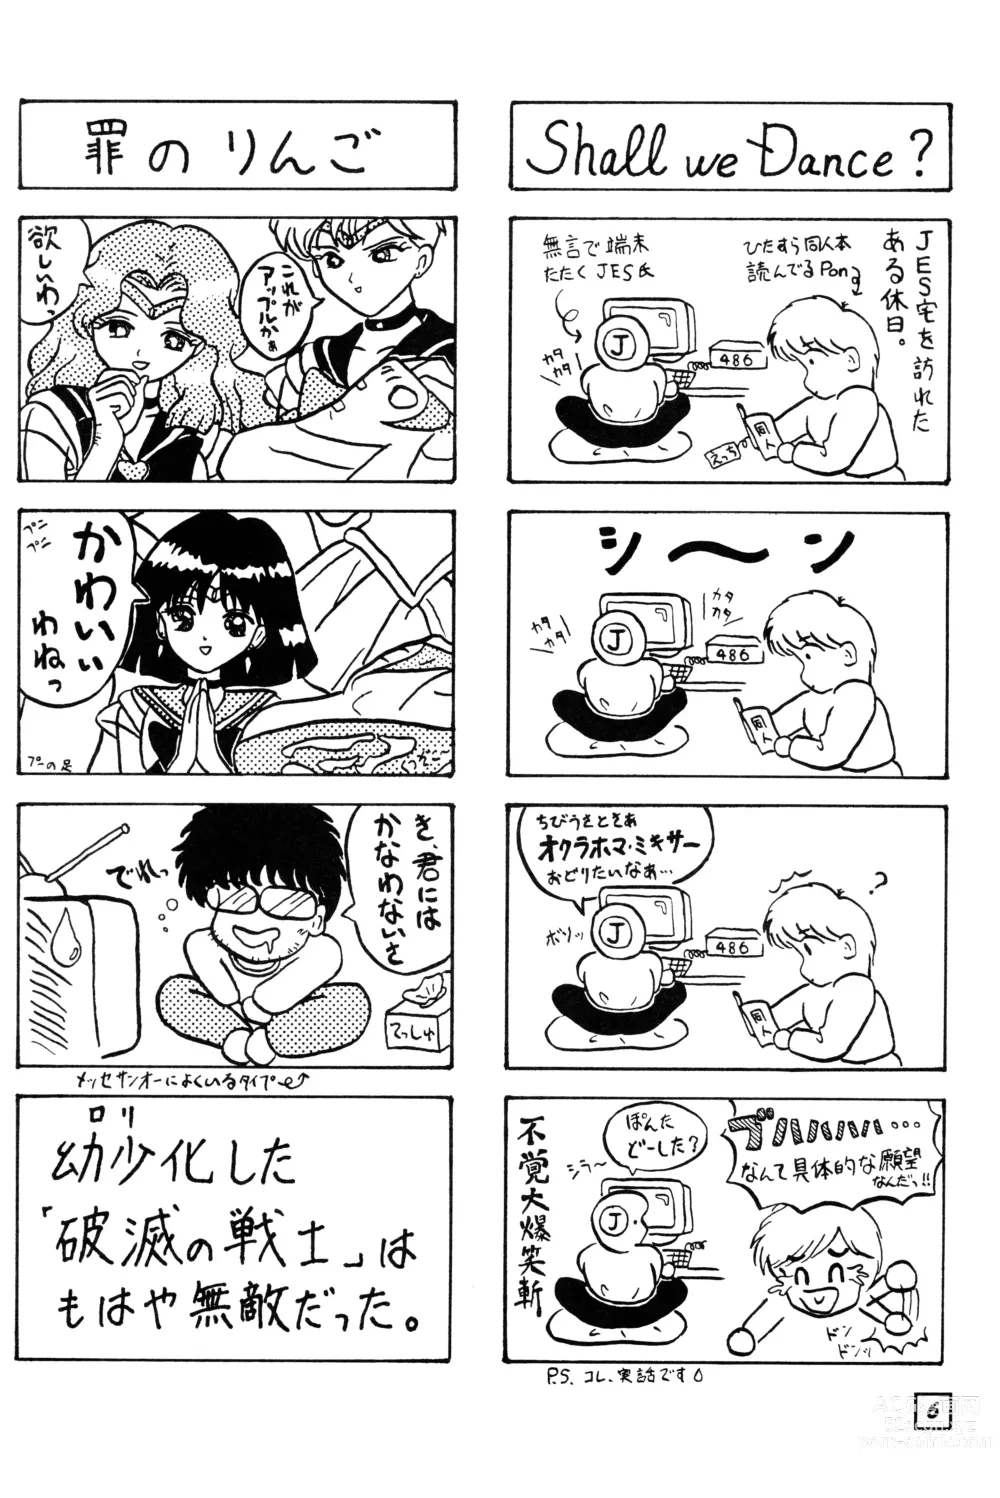 Page 5 of doujinshi SuMoMo